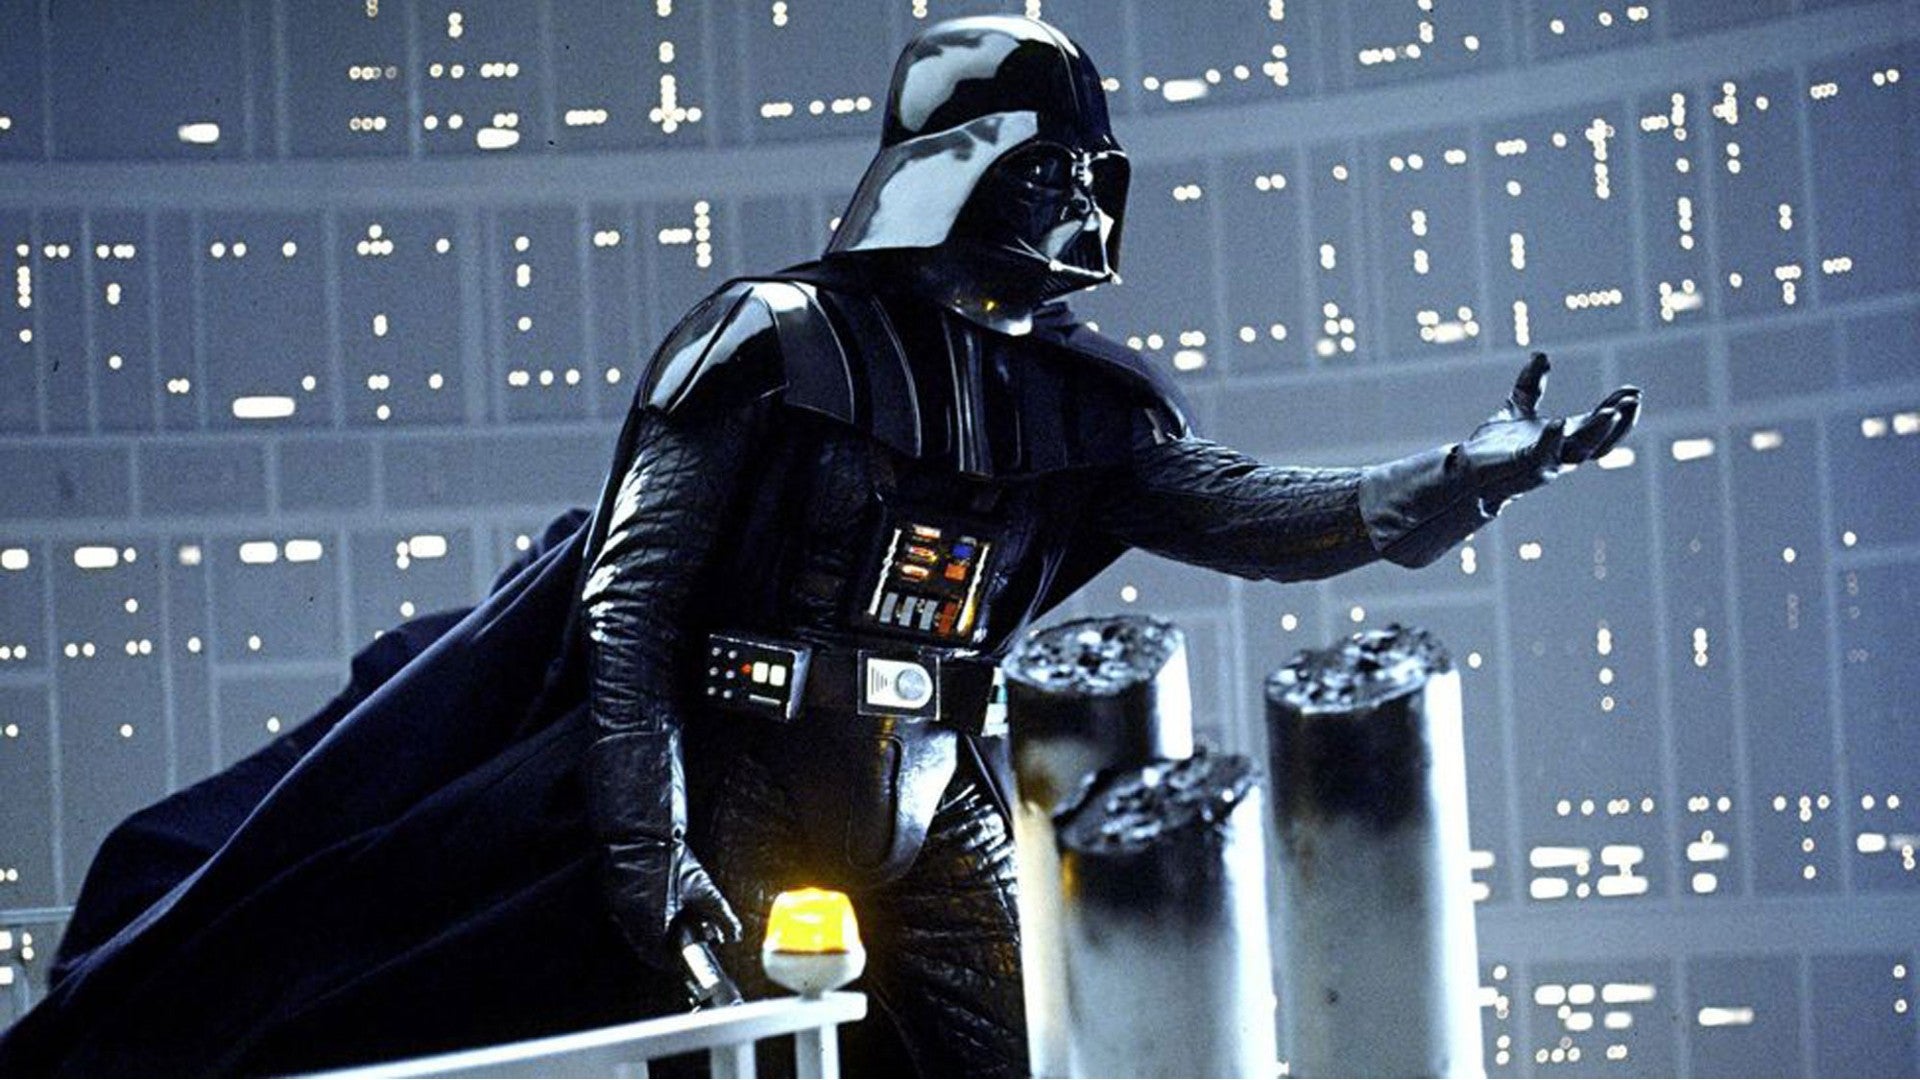 Star Wars Empire Strikes Back Darth Vader